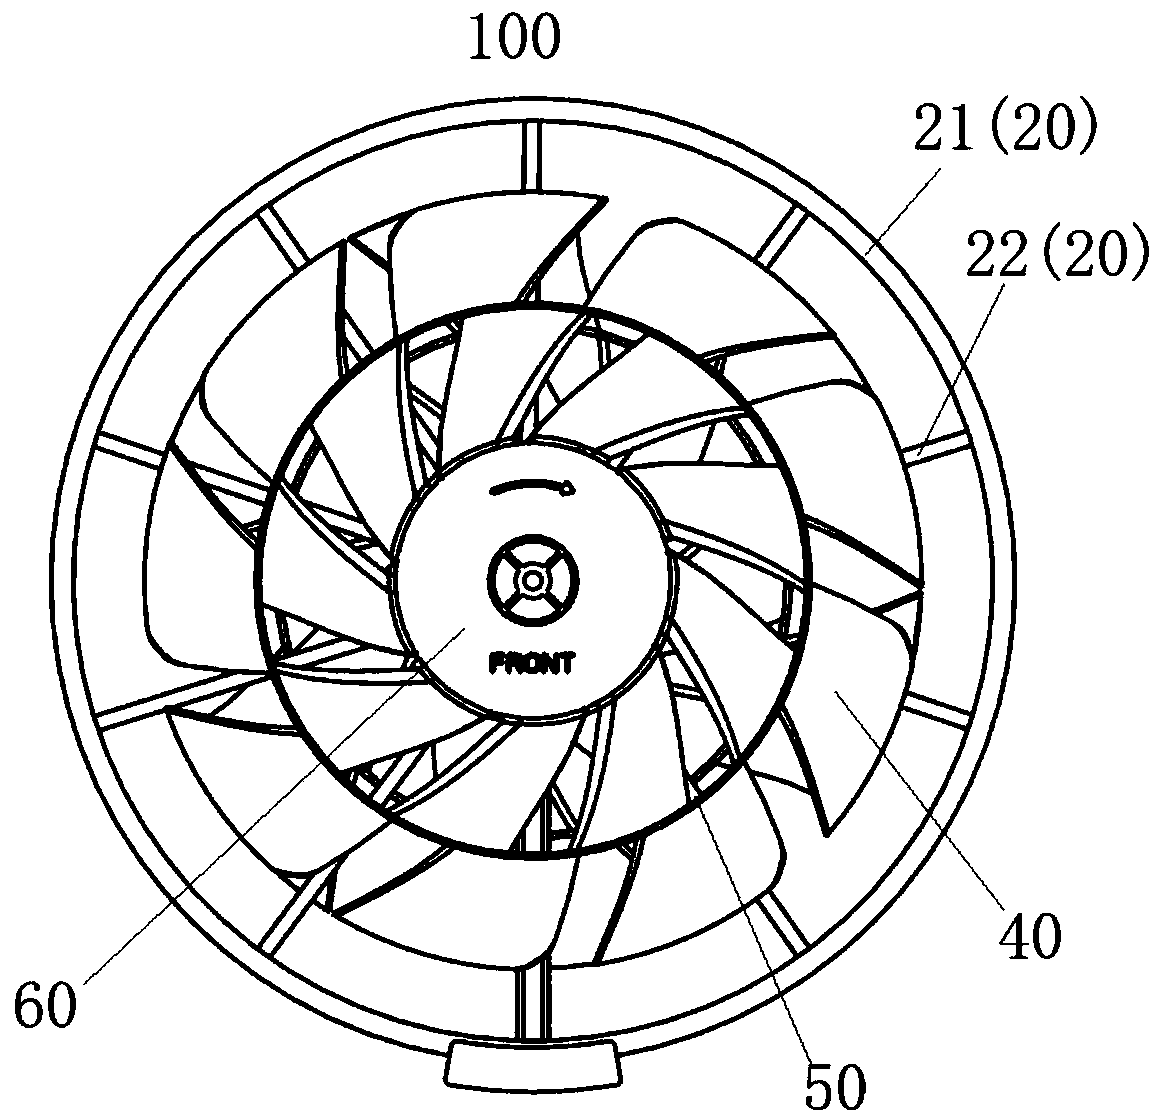 Counter rotating fan